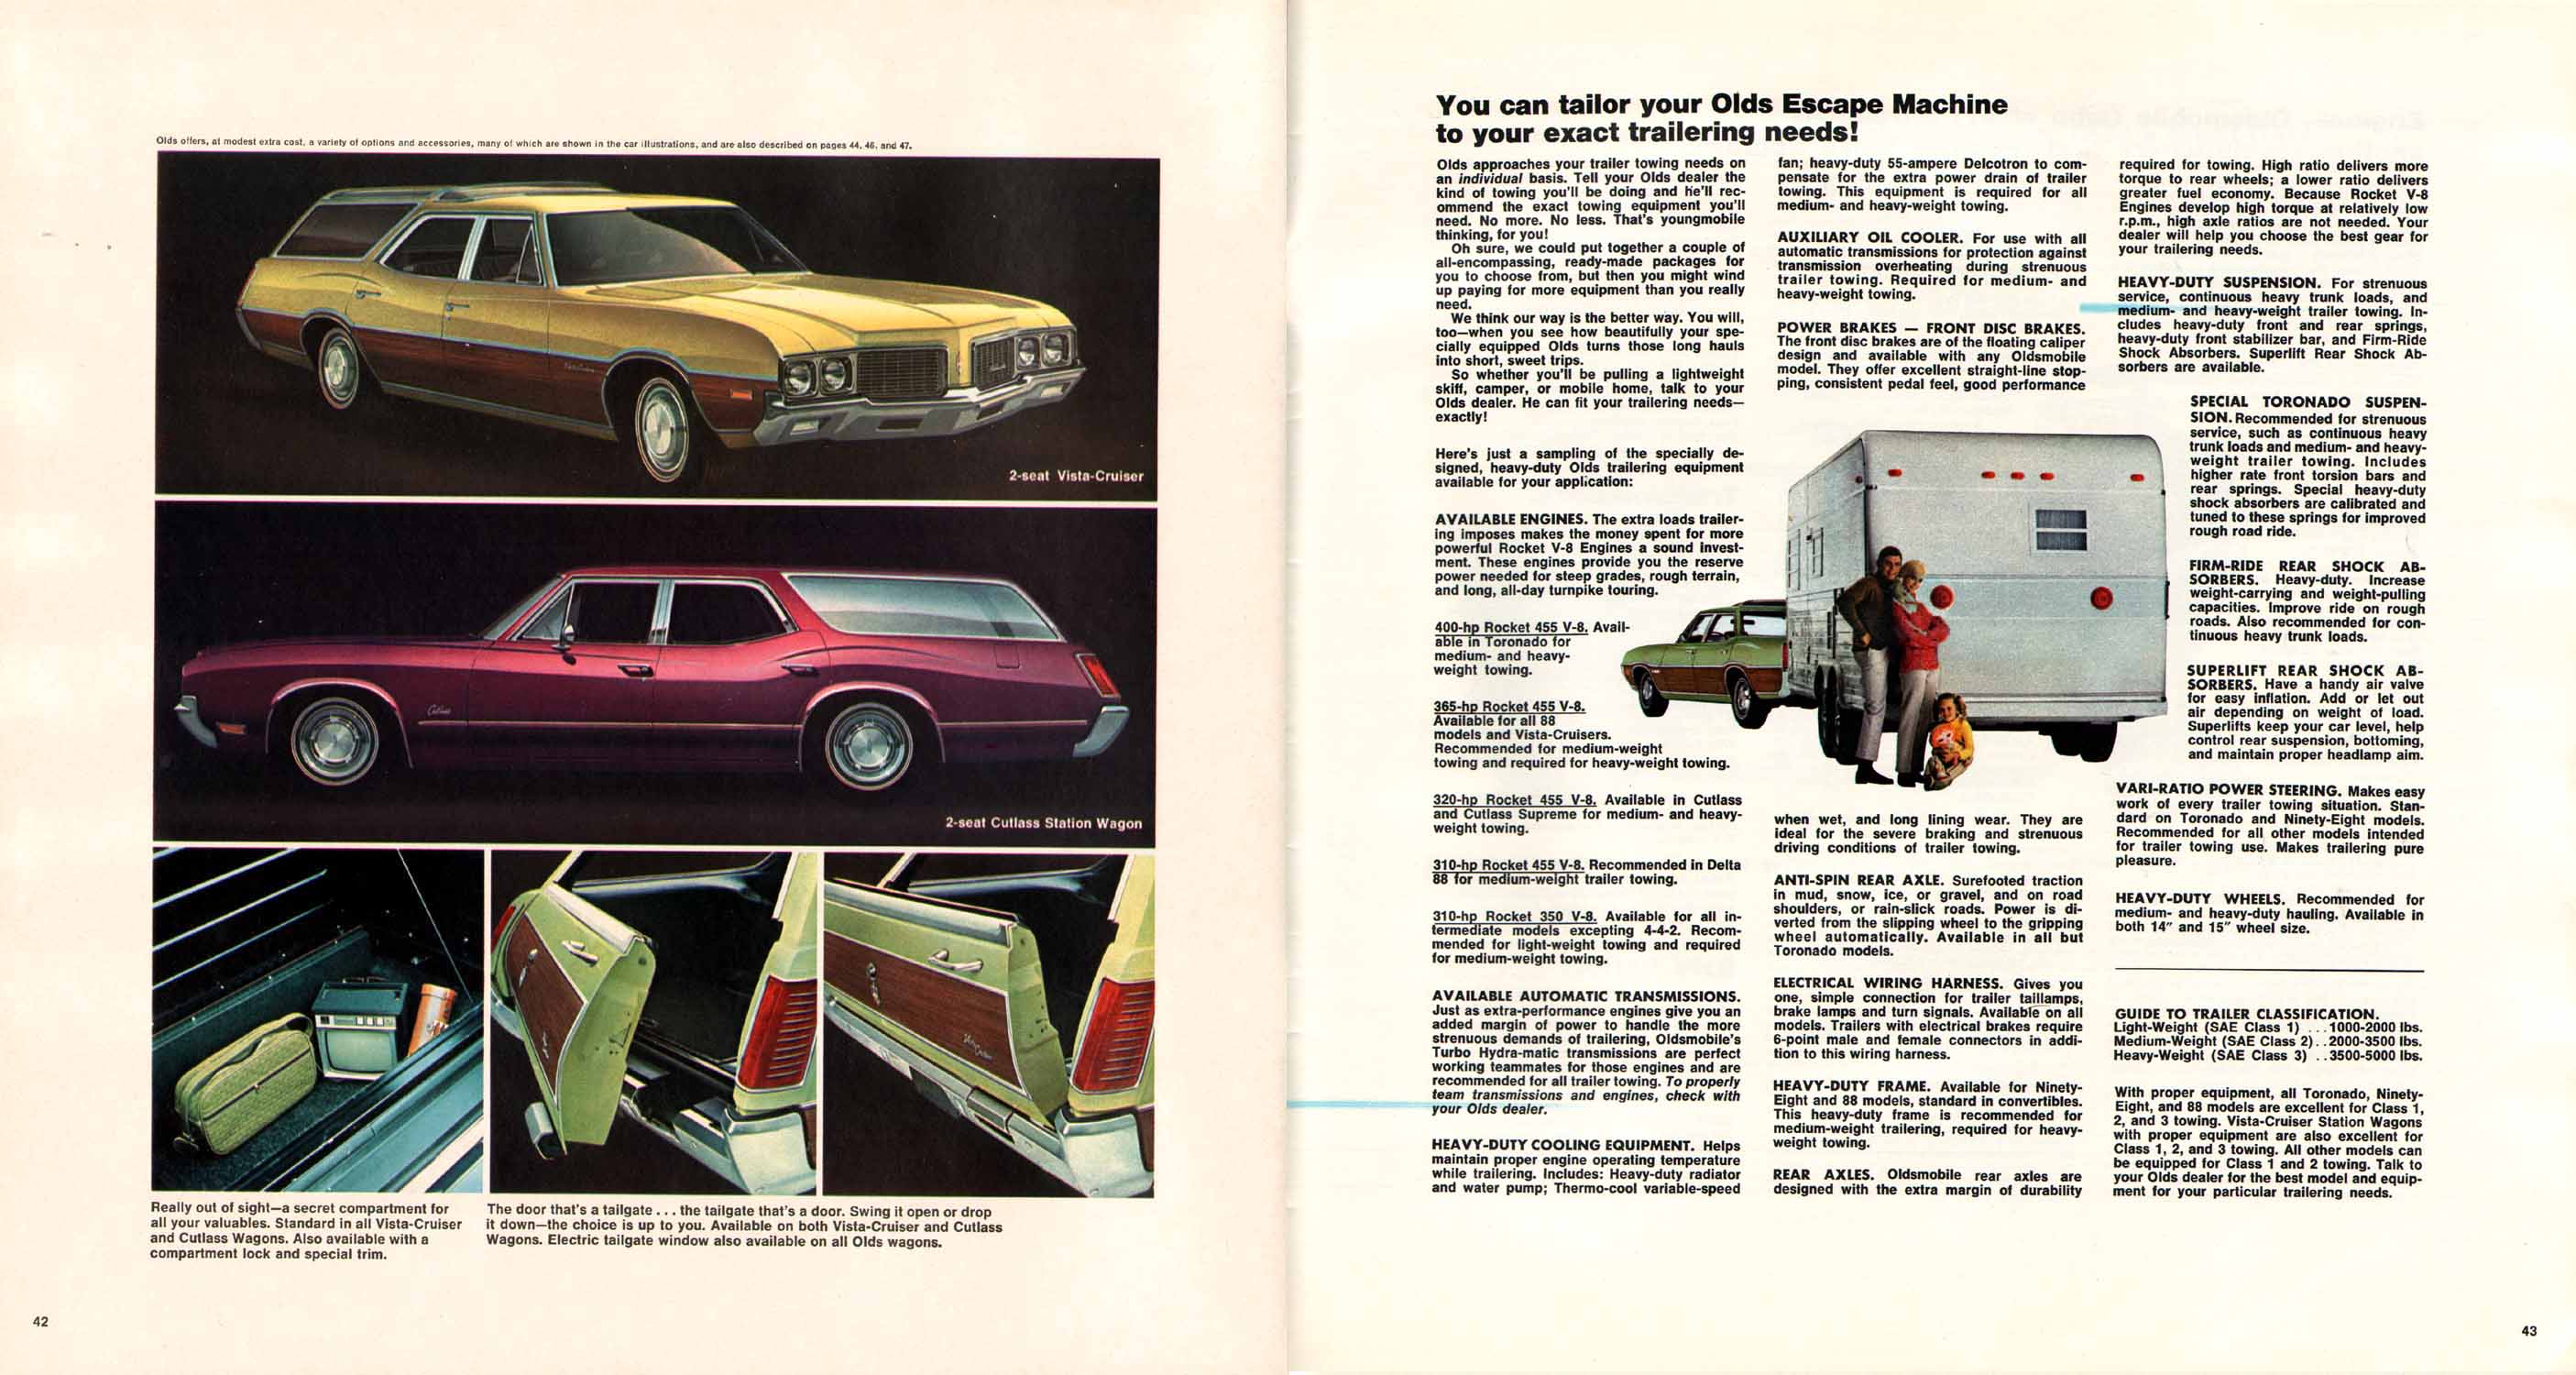 1970_Oldsmobile_Full_Line_Prestige_10-69-42-43